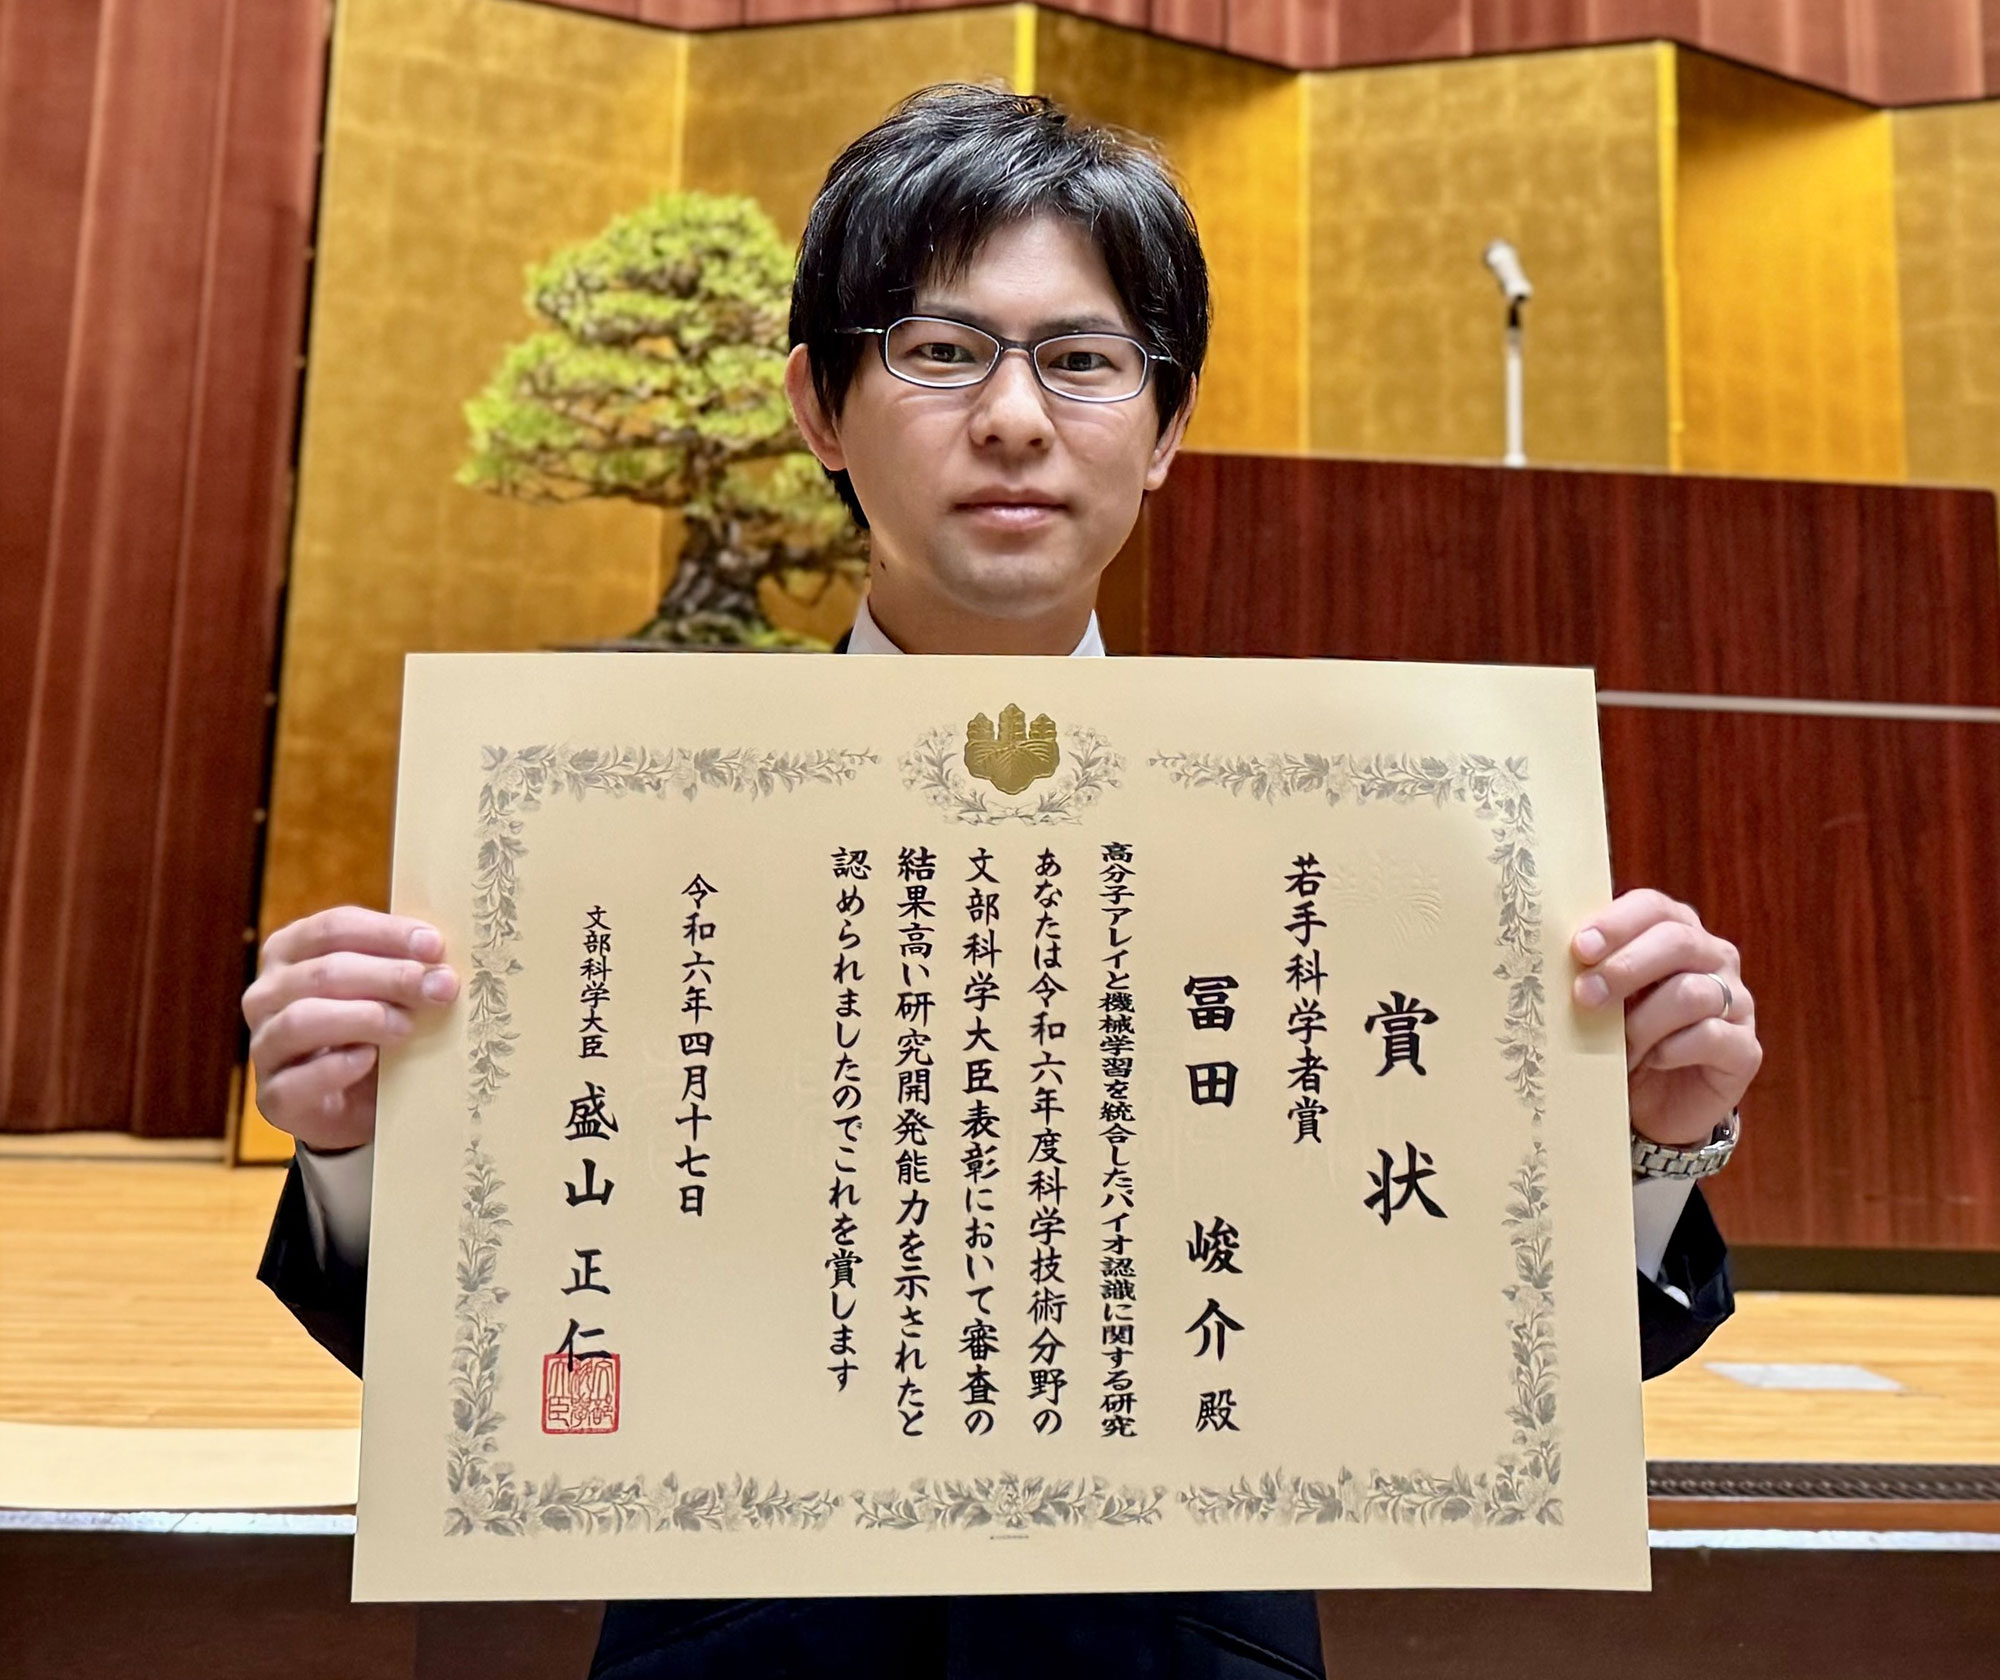 賞状を持つ冨田峻介上級主任研究員写真